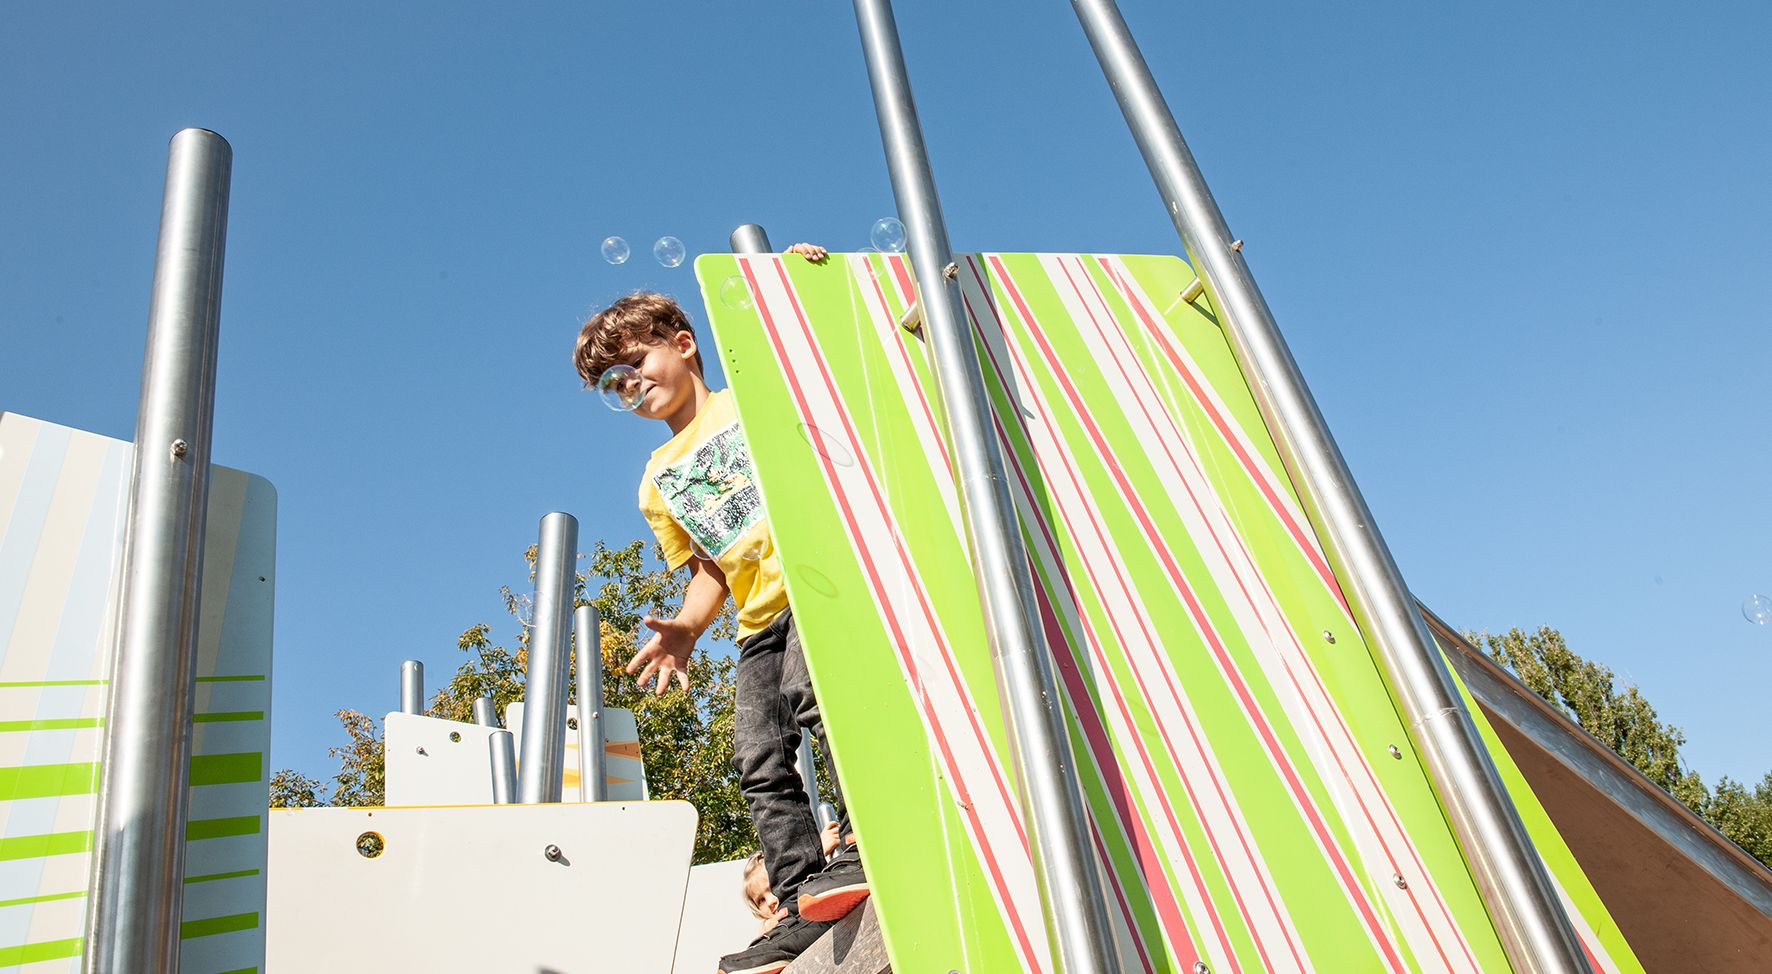 Das Bild zeigt einen Jungen auf einem Klettergerüst.